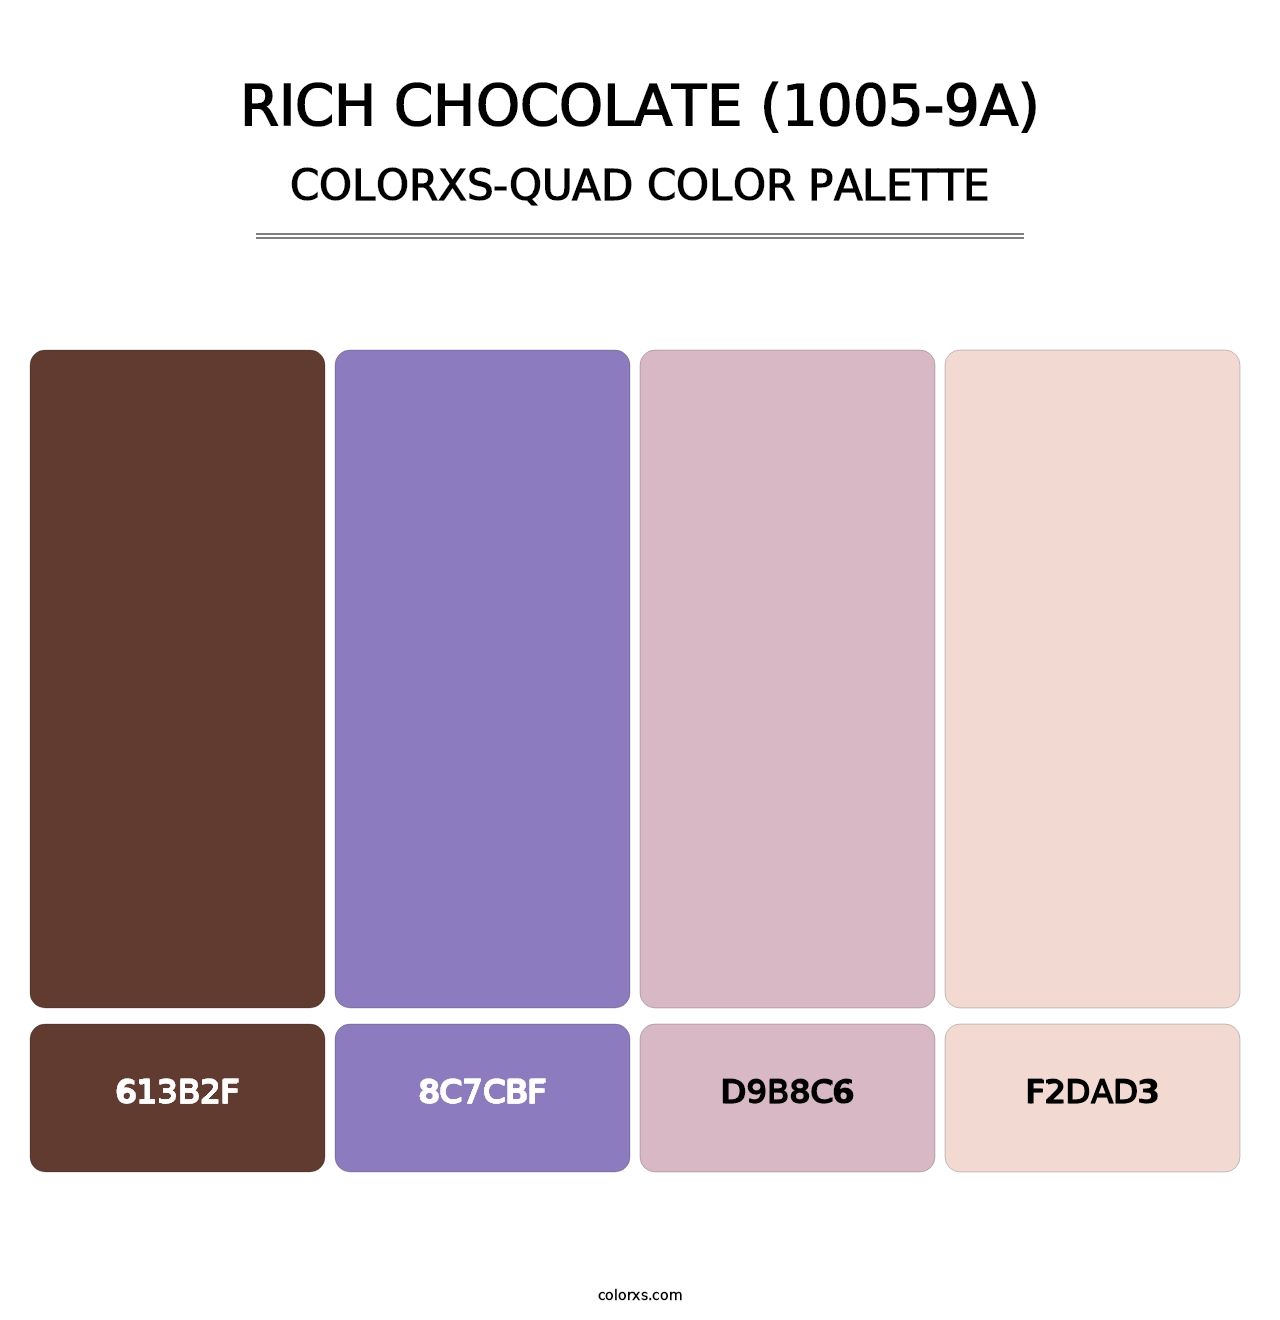 Rich Chocolate (1005-9A) - Colorxs Quad Palette